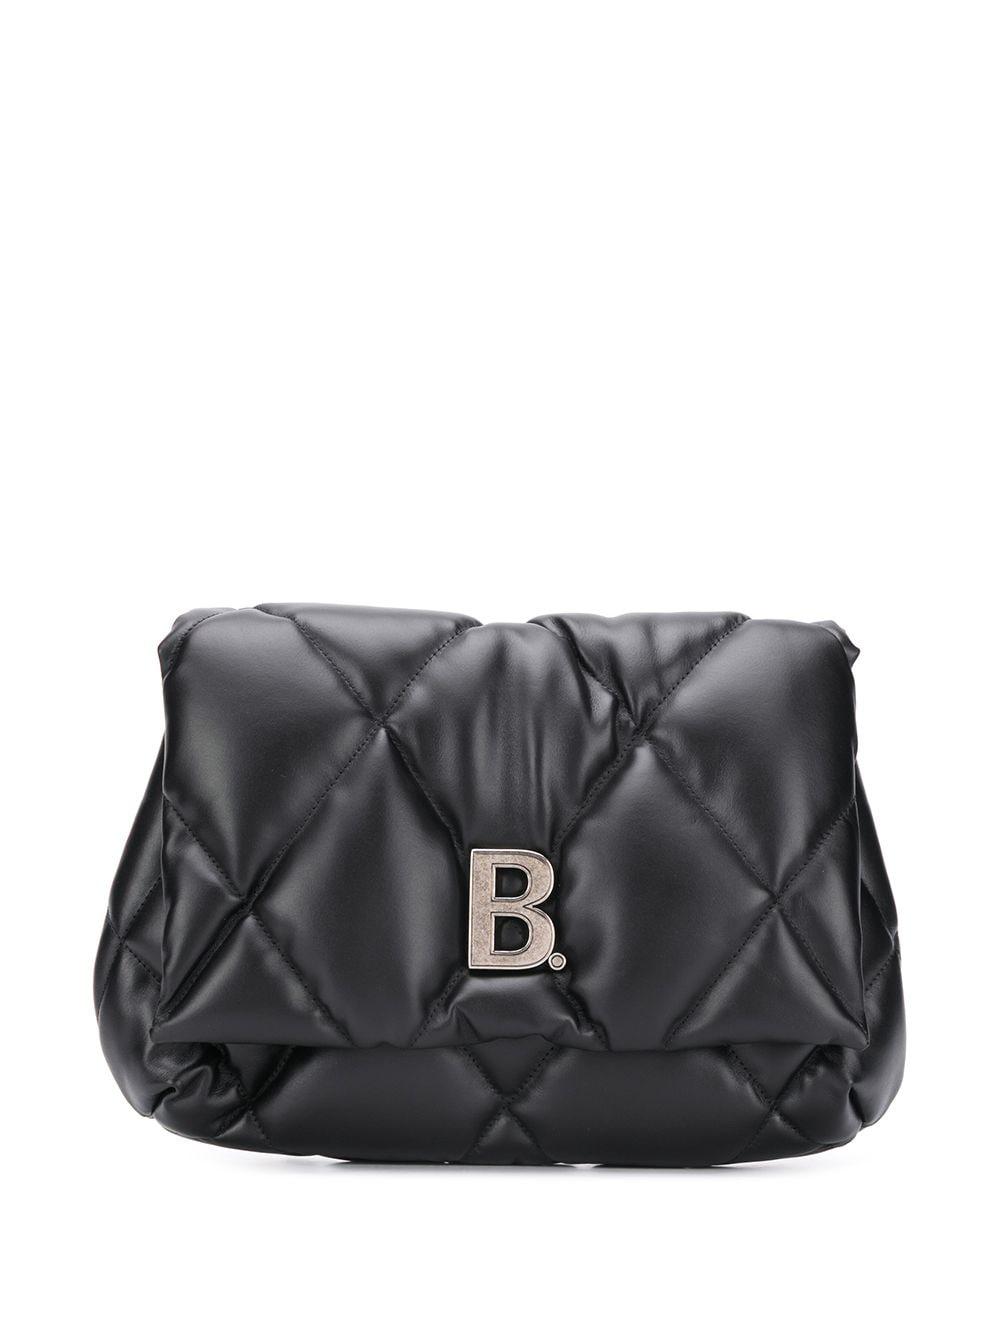 Balenciaga Touch Puffy Clutch Bag in Black | Lyst